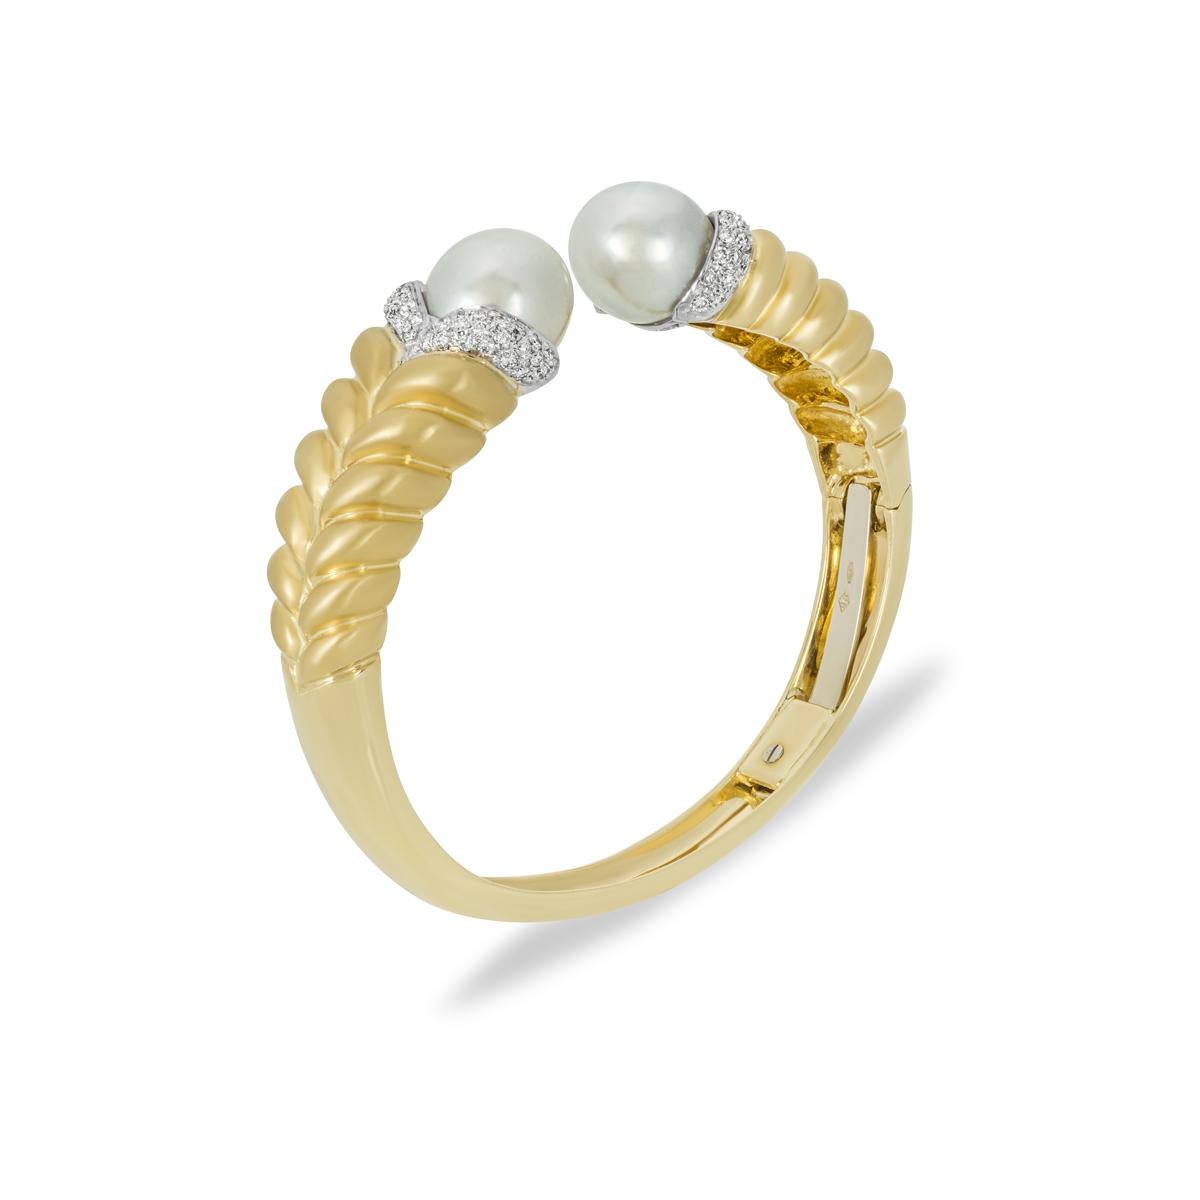 Bracelet de manchette en or jaune 18 carats avec perles et diamants. Deux perles blanches ornent les terminaisons mesurant 12 mm de large et accentuées par des diamants sertis en pavé. Les 84 diamants ronds de taille brillant ont un poids total